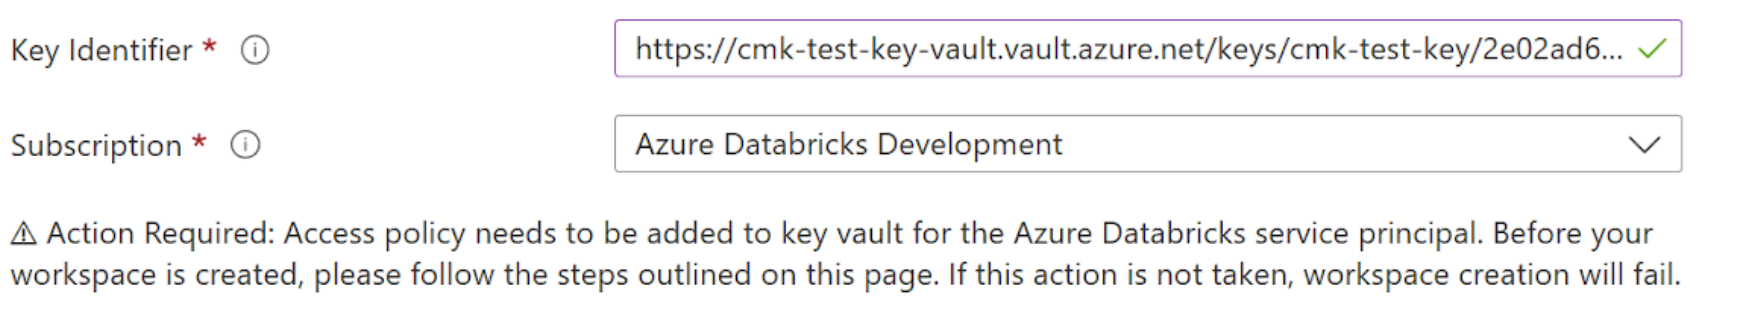 显示“Azure Databricks”边栏选项卡的“托管磁盘”部分中的字段